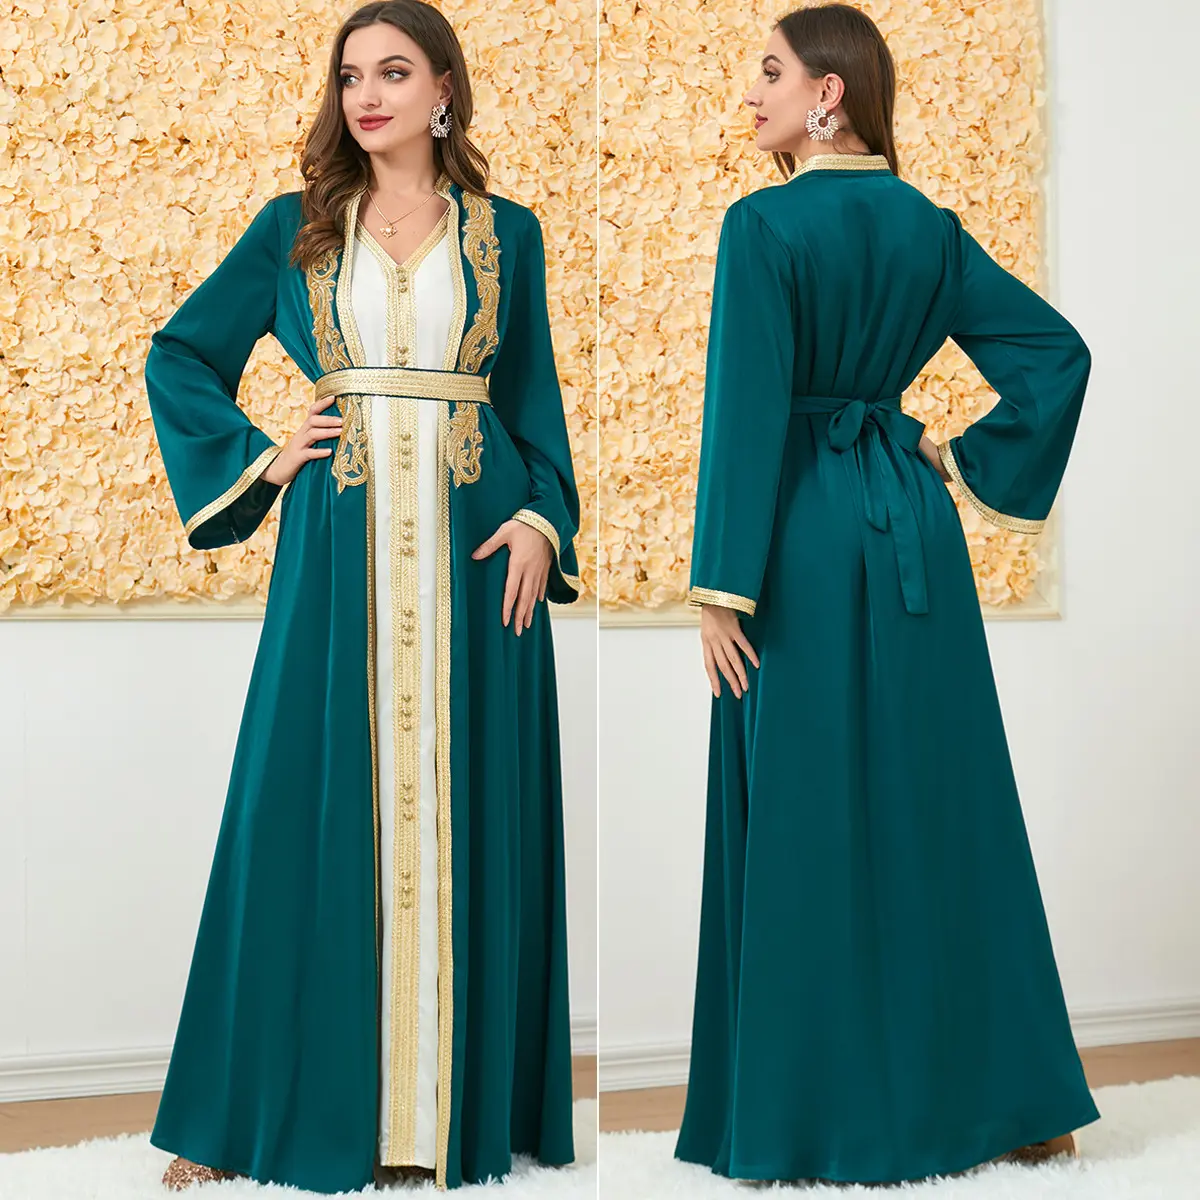 Jakarta Muslim Dress Damen Spring Wear Zweiteiliges Kleid für muslimische Damen New Fashion Khamis Arab Islamic Clothing Thobe